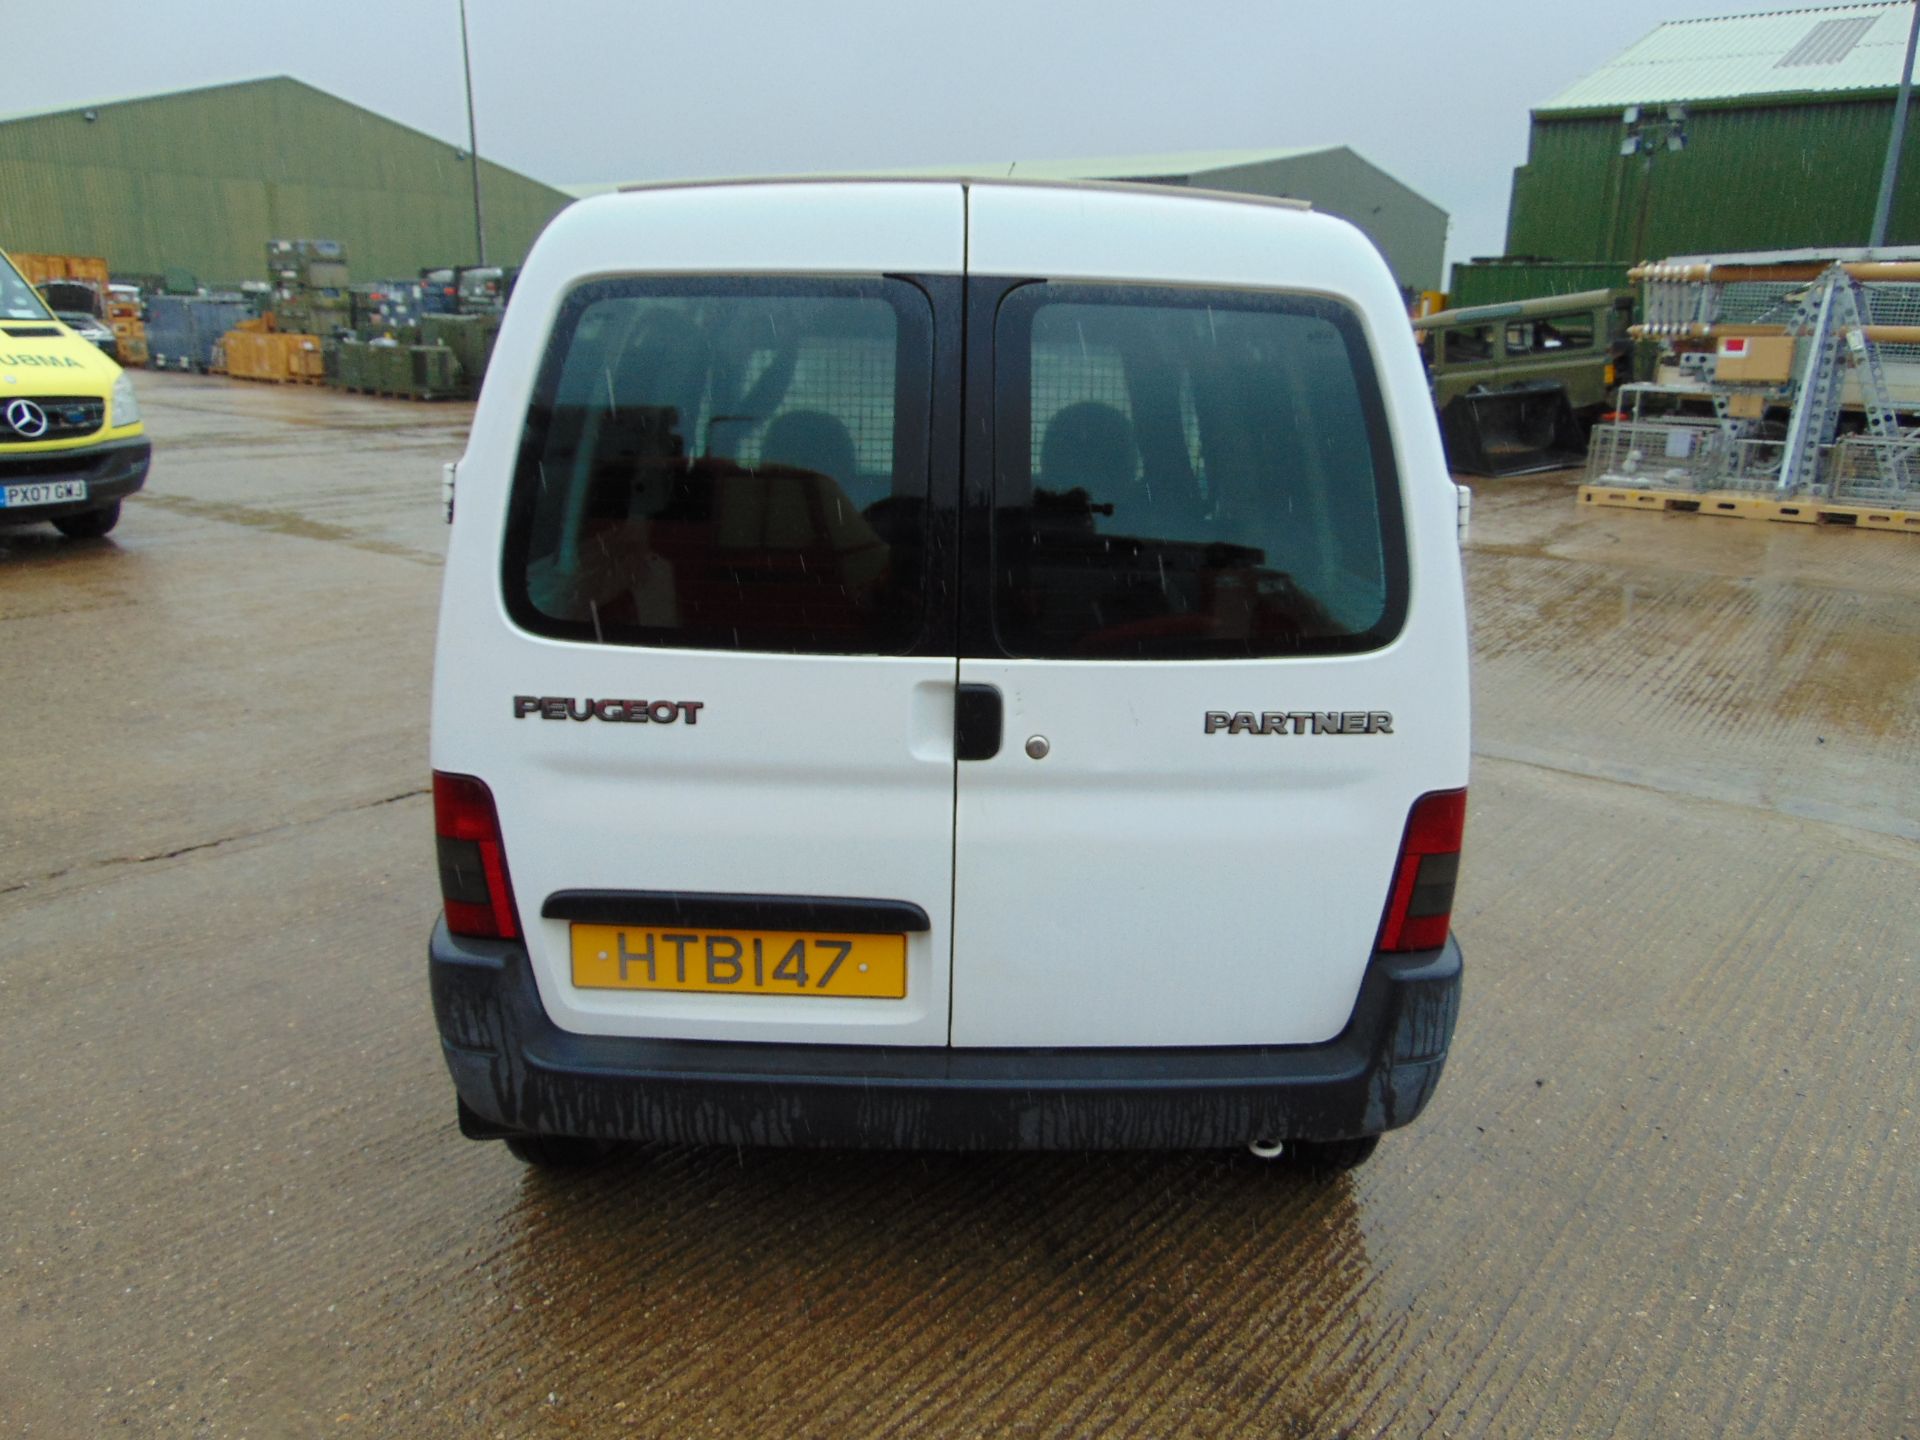 Peugeot Partner Van - Image 6 of 19